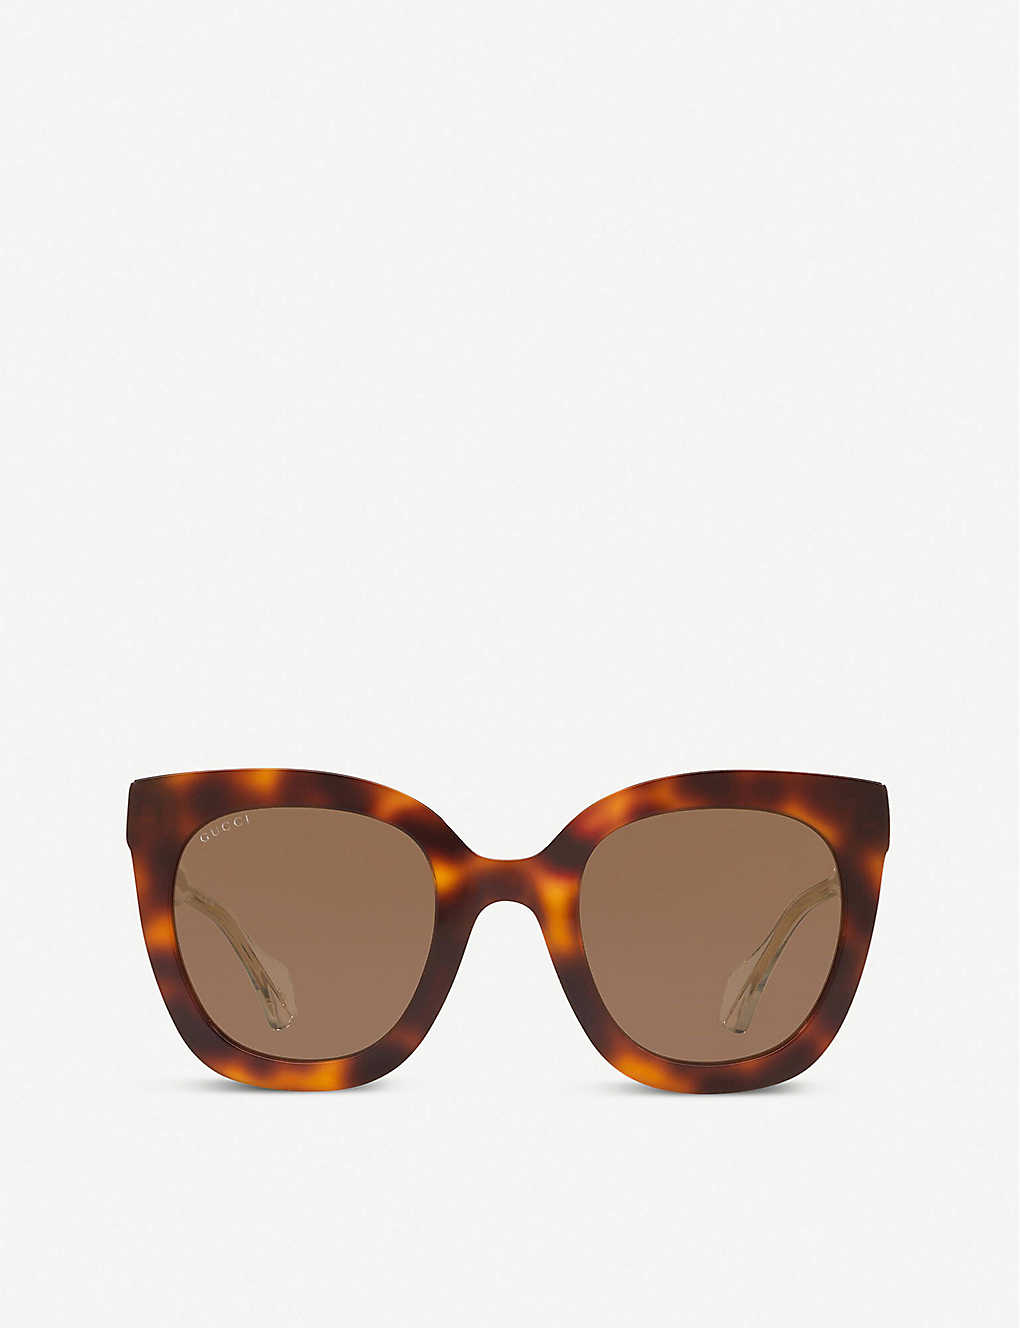 GG0564S square sunglasses(8453279)